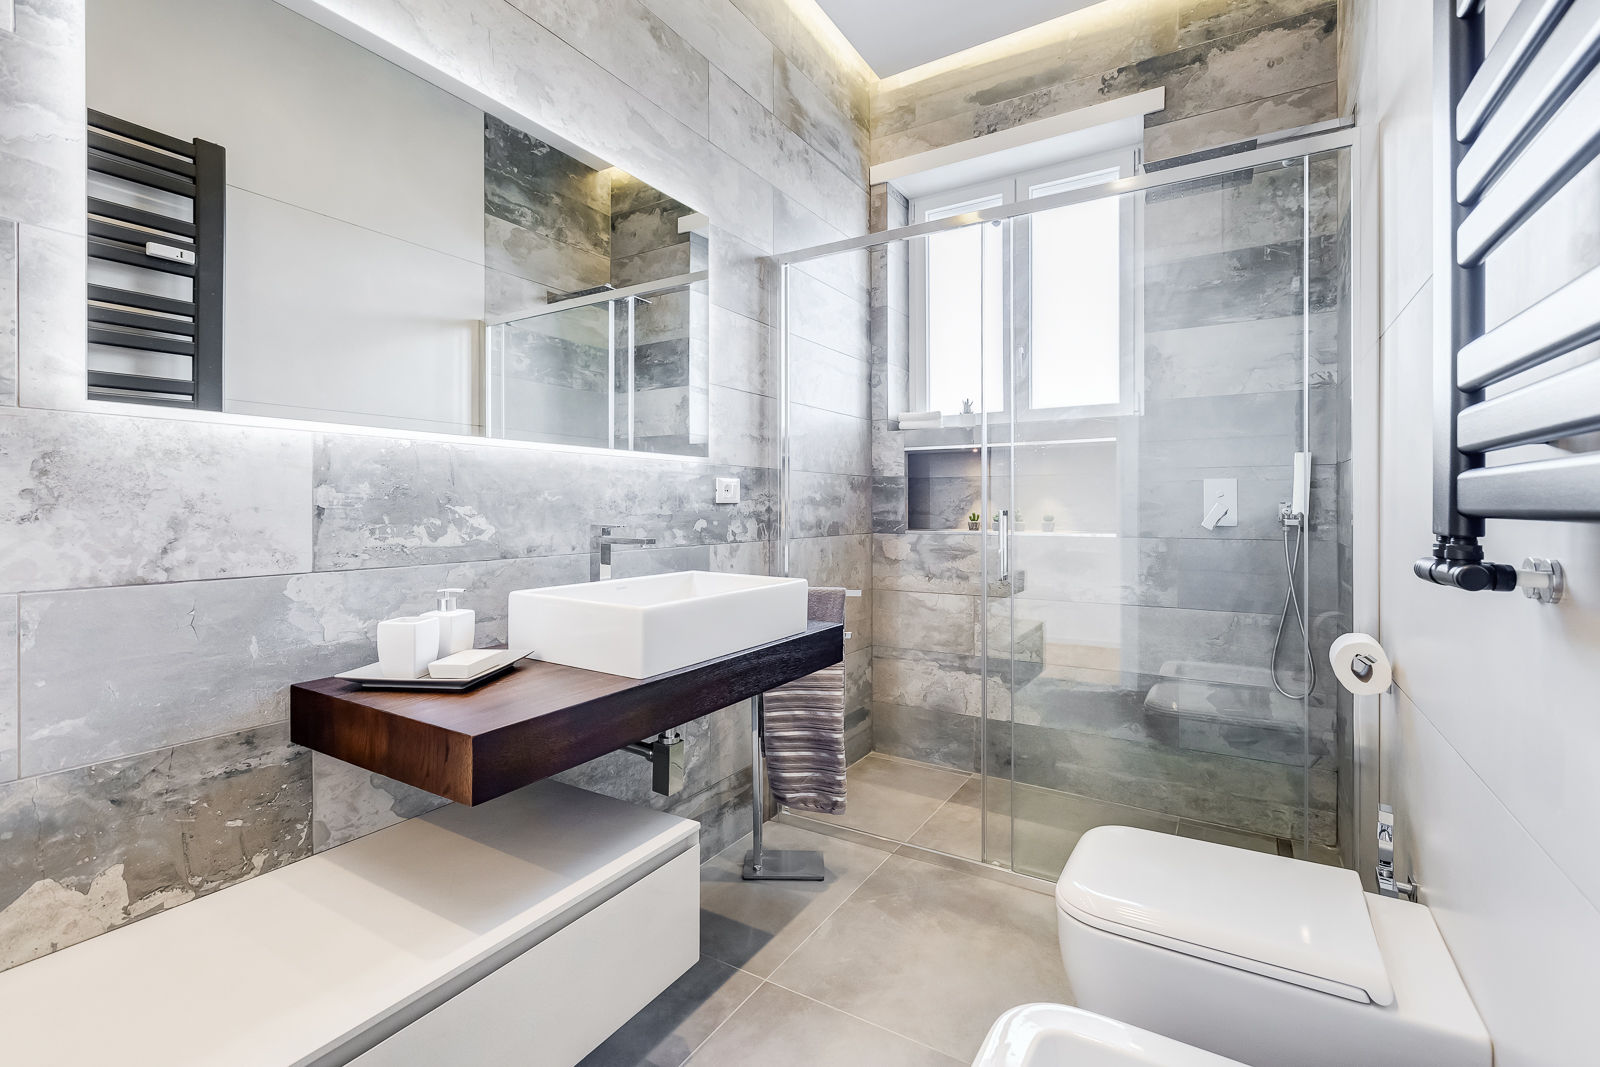 Don Bosco Minimal Design - Eleganza e Semplicità per una Casa Moderna, EF_Archidesign EF_Archidesign Minimalist style bathroom